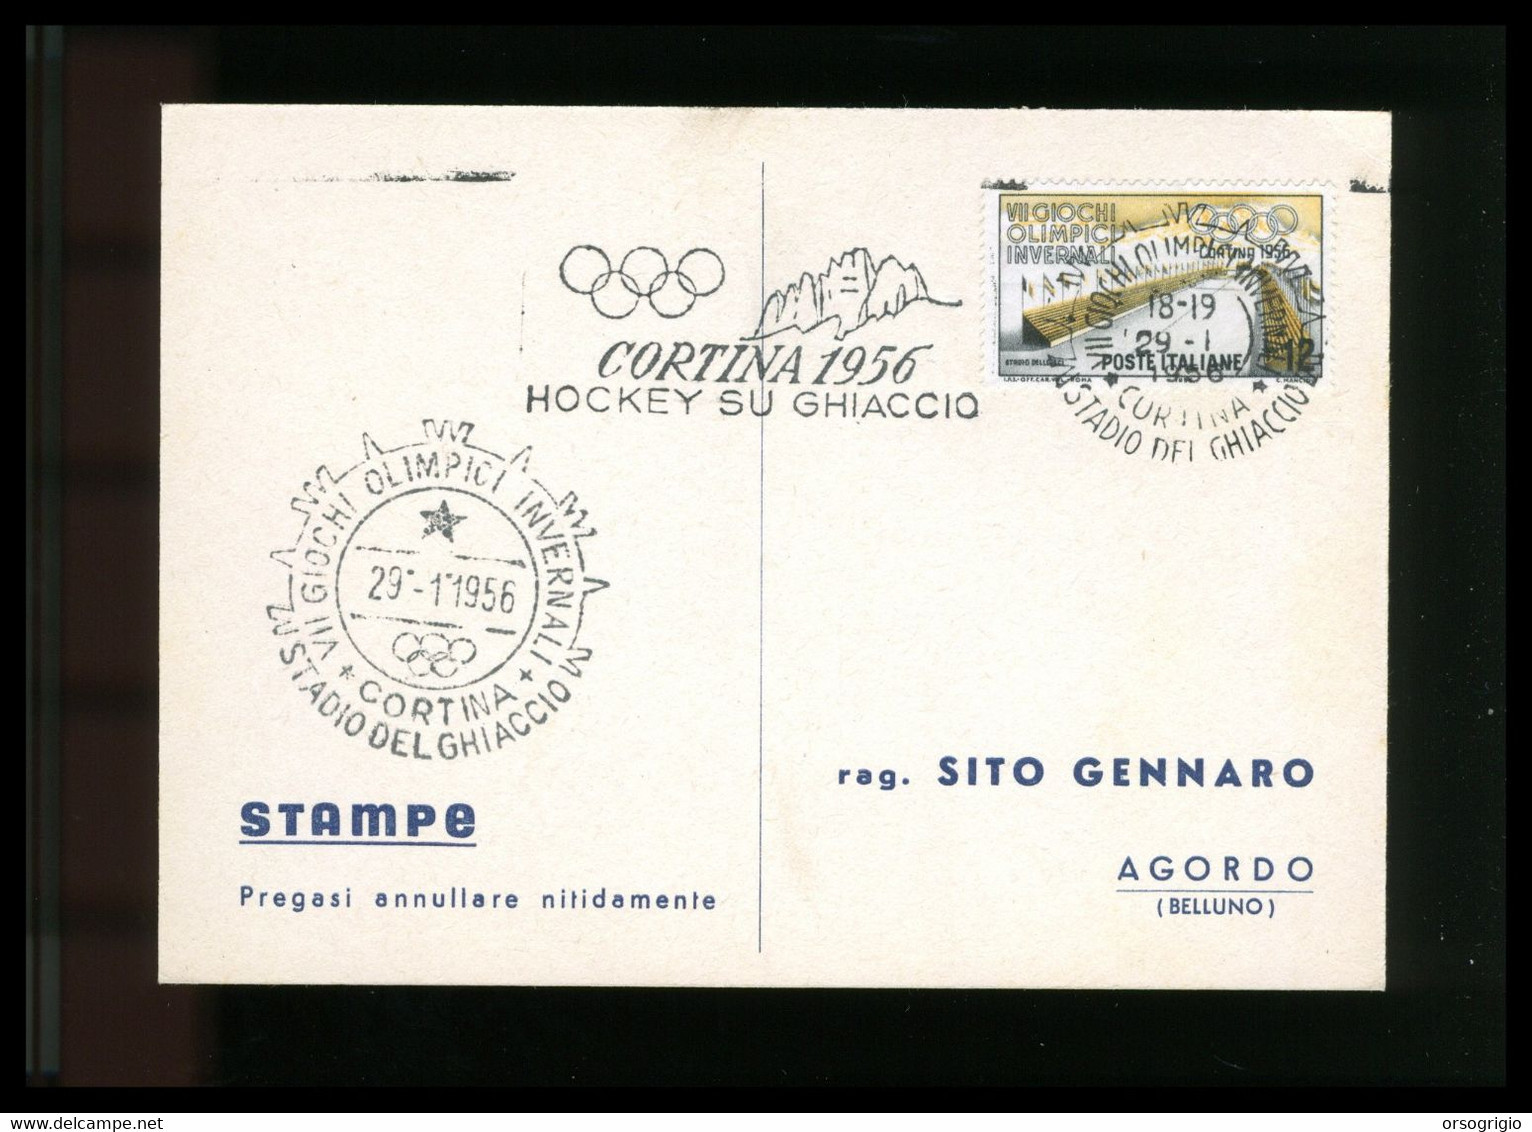 ITALIA - 1956 GIOCHI OLIMPICI INVERNALI Di CORTINA D'AMPEZZO - HOCKEY SU GHIACCIO -  29-1-1956    LUSSO - Inverno1956: Cortina D'Ampezzo